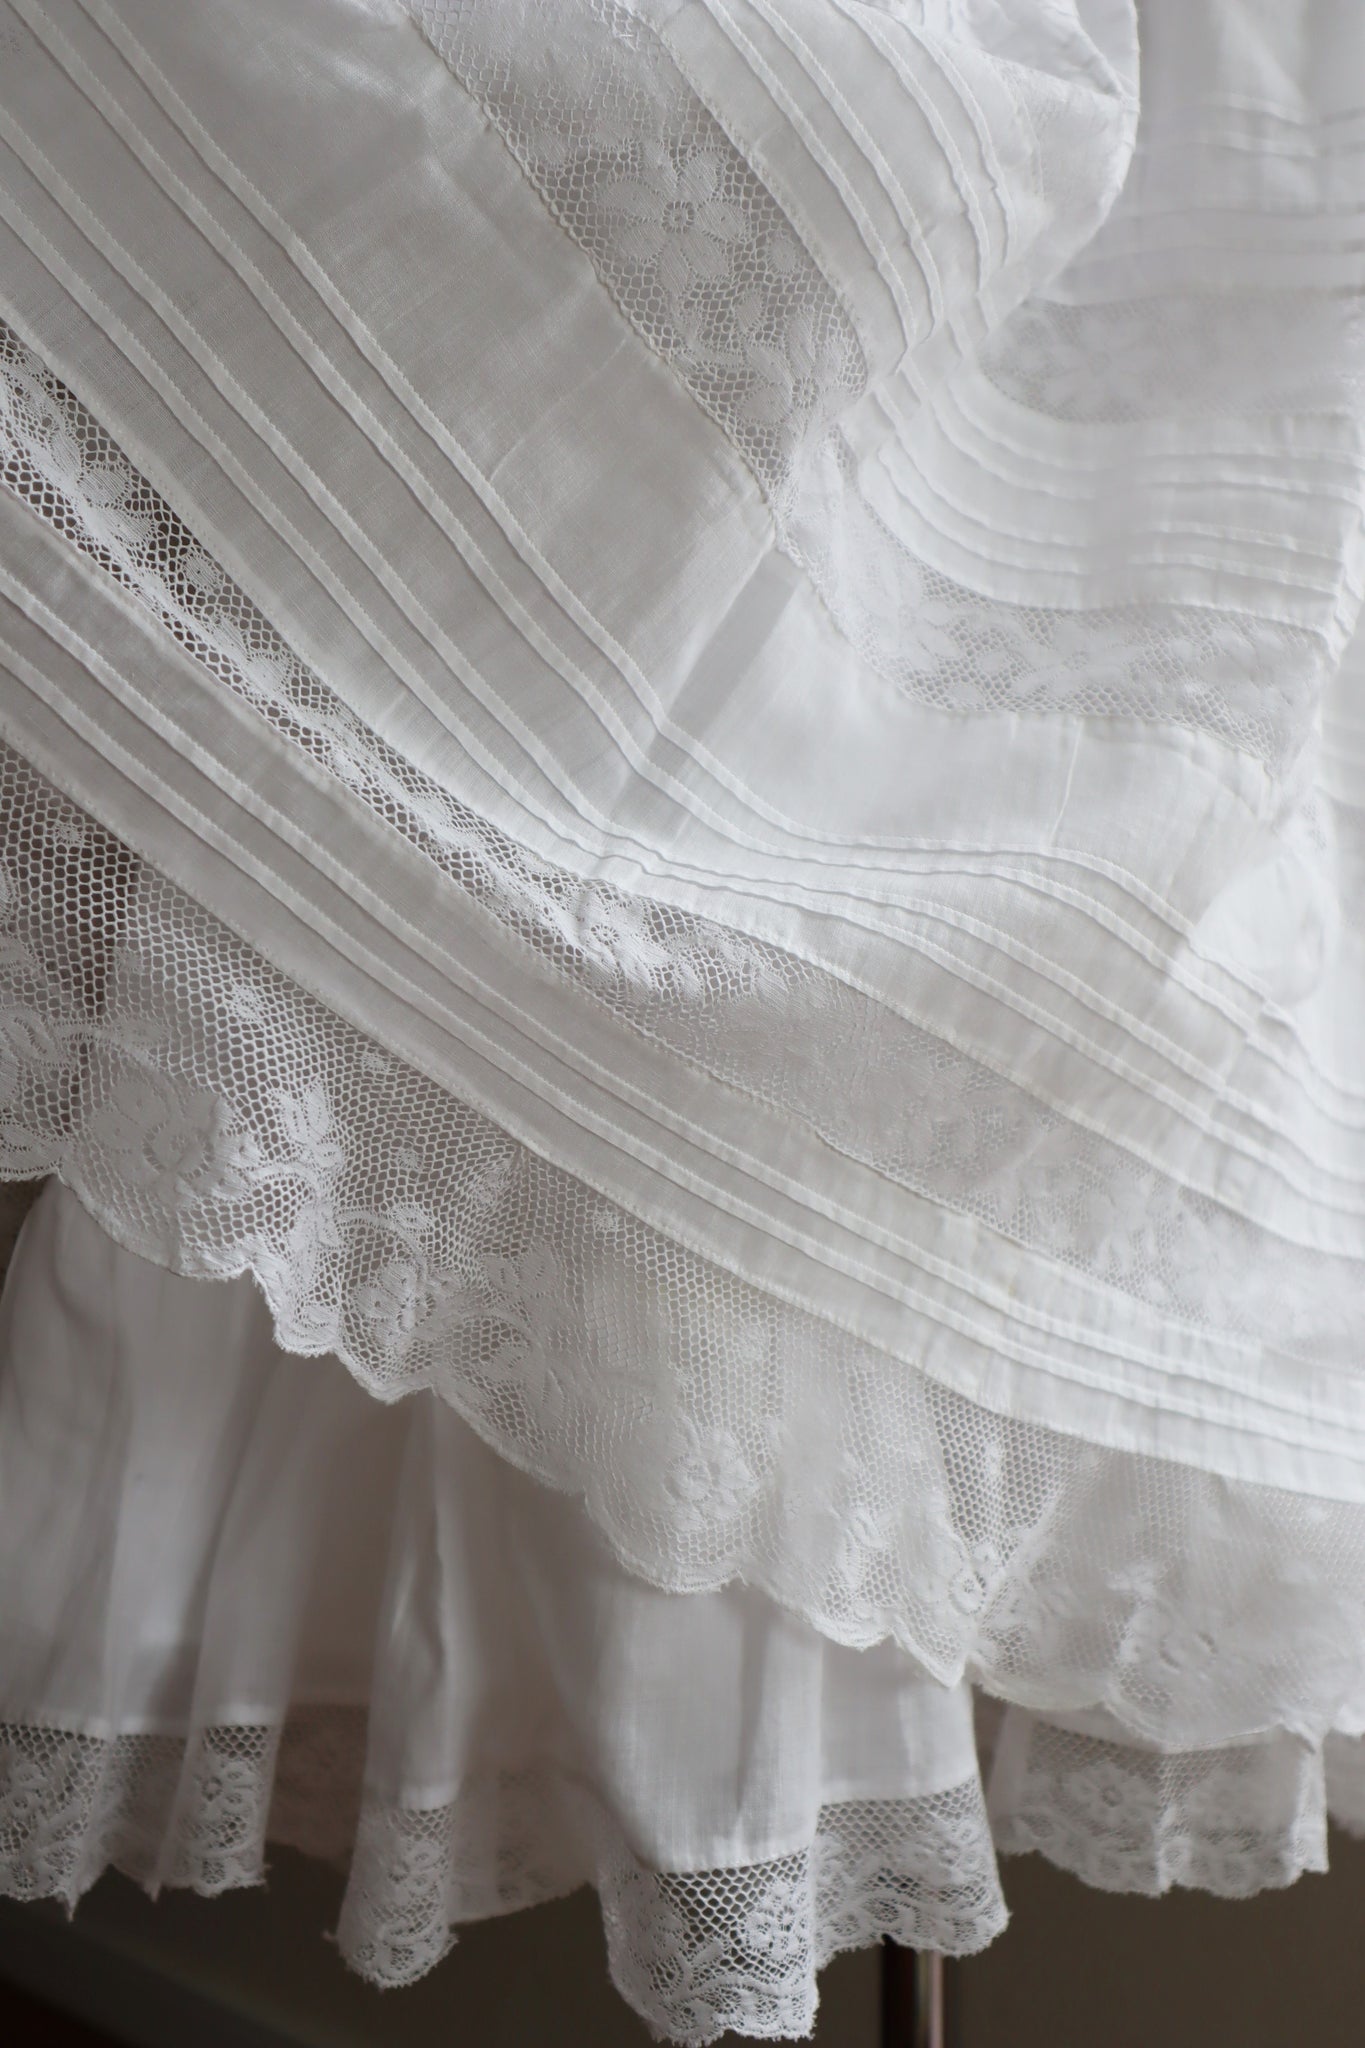 1910s Antique Lace Lingerie Dress